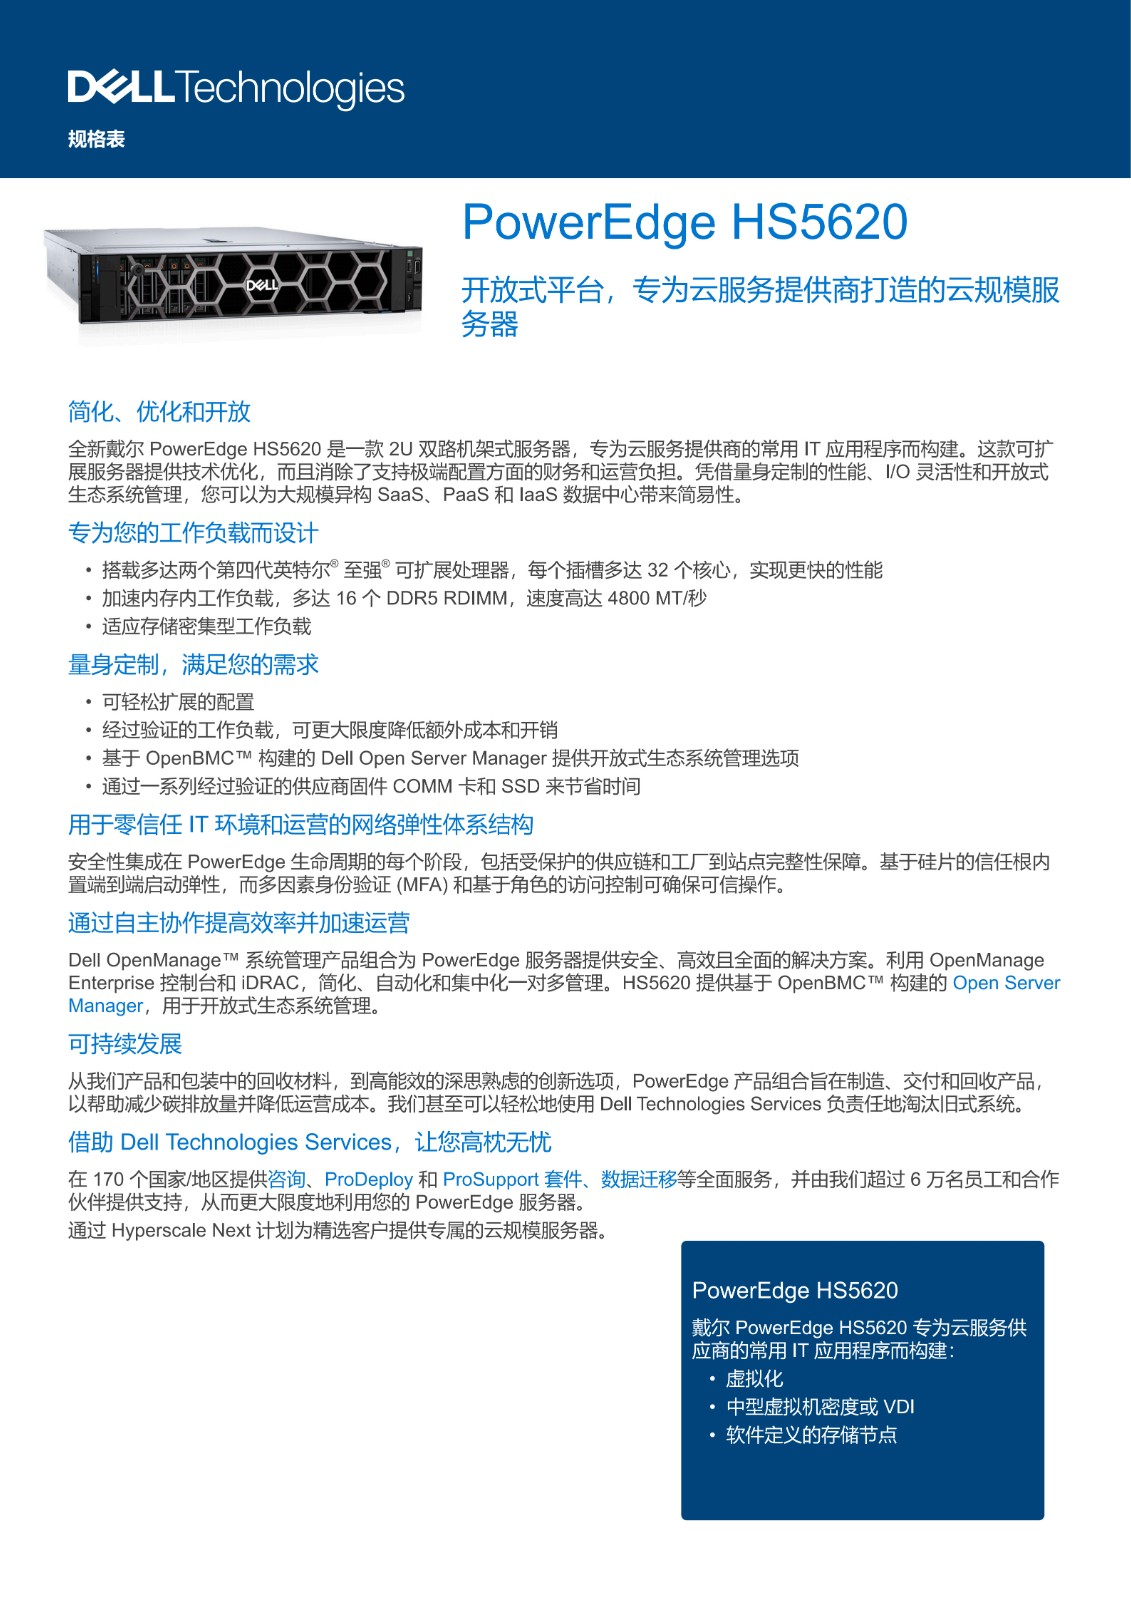 Dell PowerEdge HS5620 Spec Sheet_CN_1.jpg